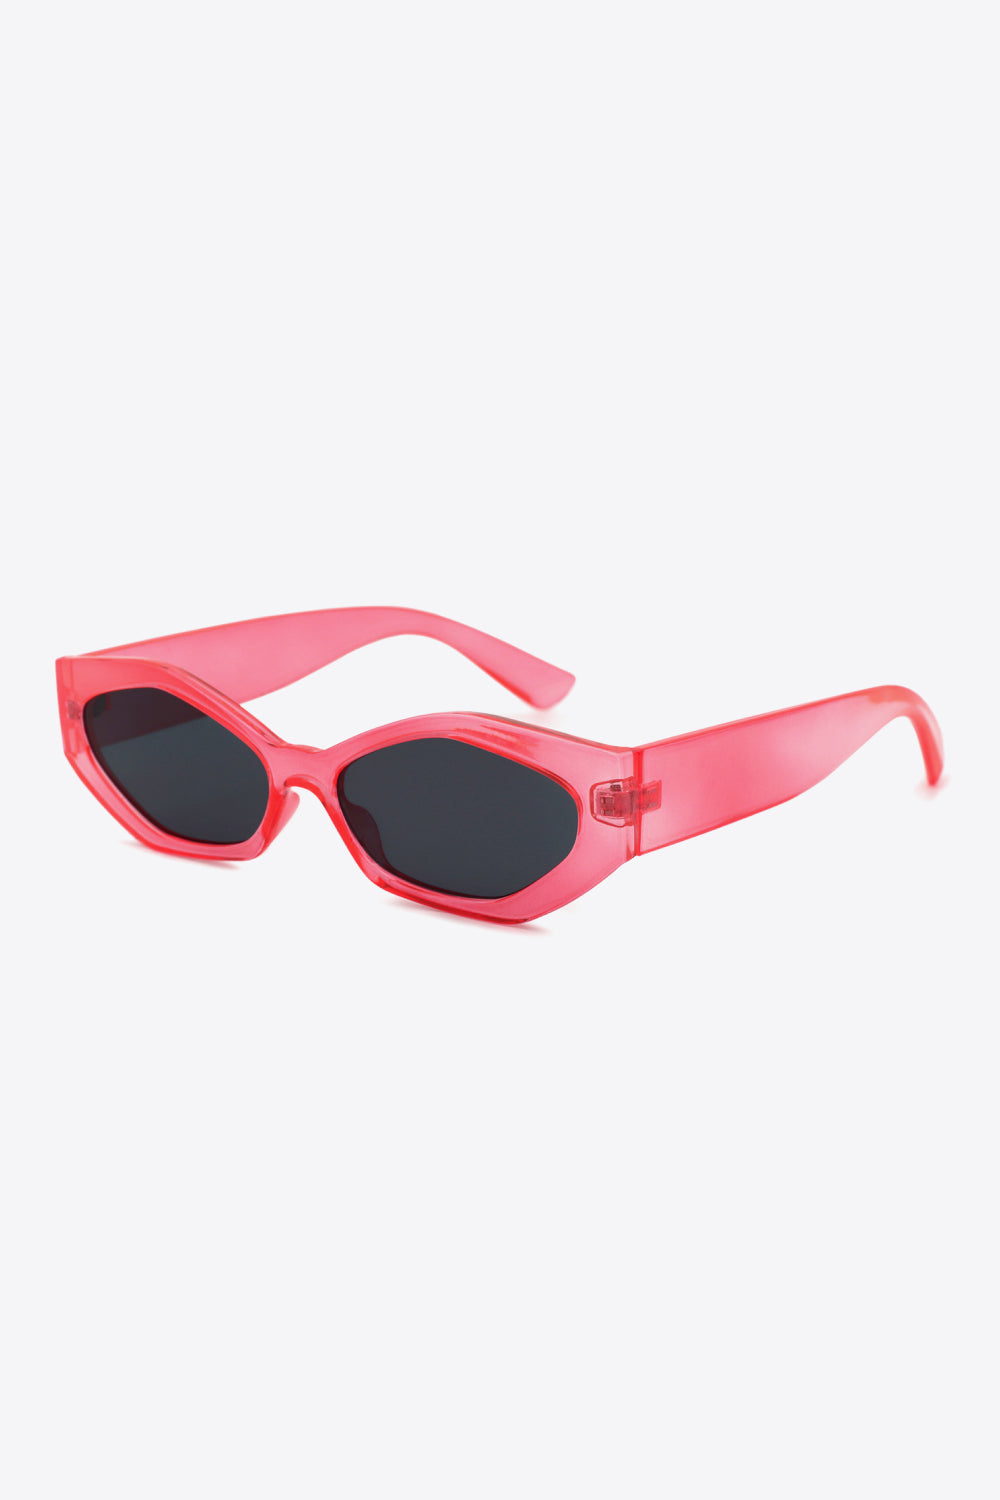 Polycarbonate Frame Wayfarer Sunglasses Scarlett One Size Sunglasses by Vim&Vigor | Vim&Vigor Boutique